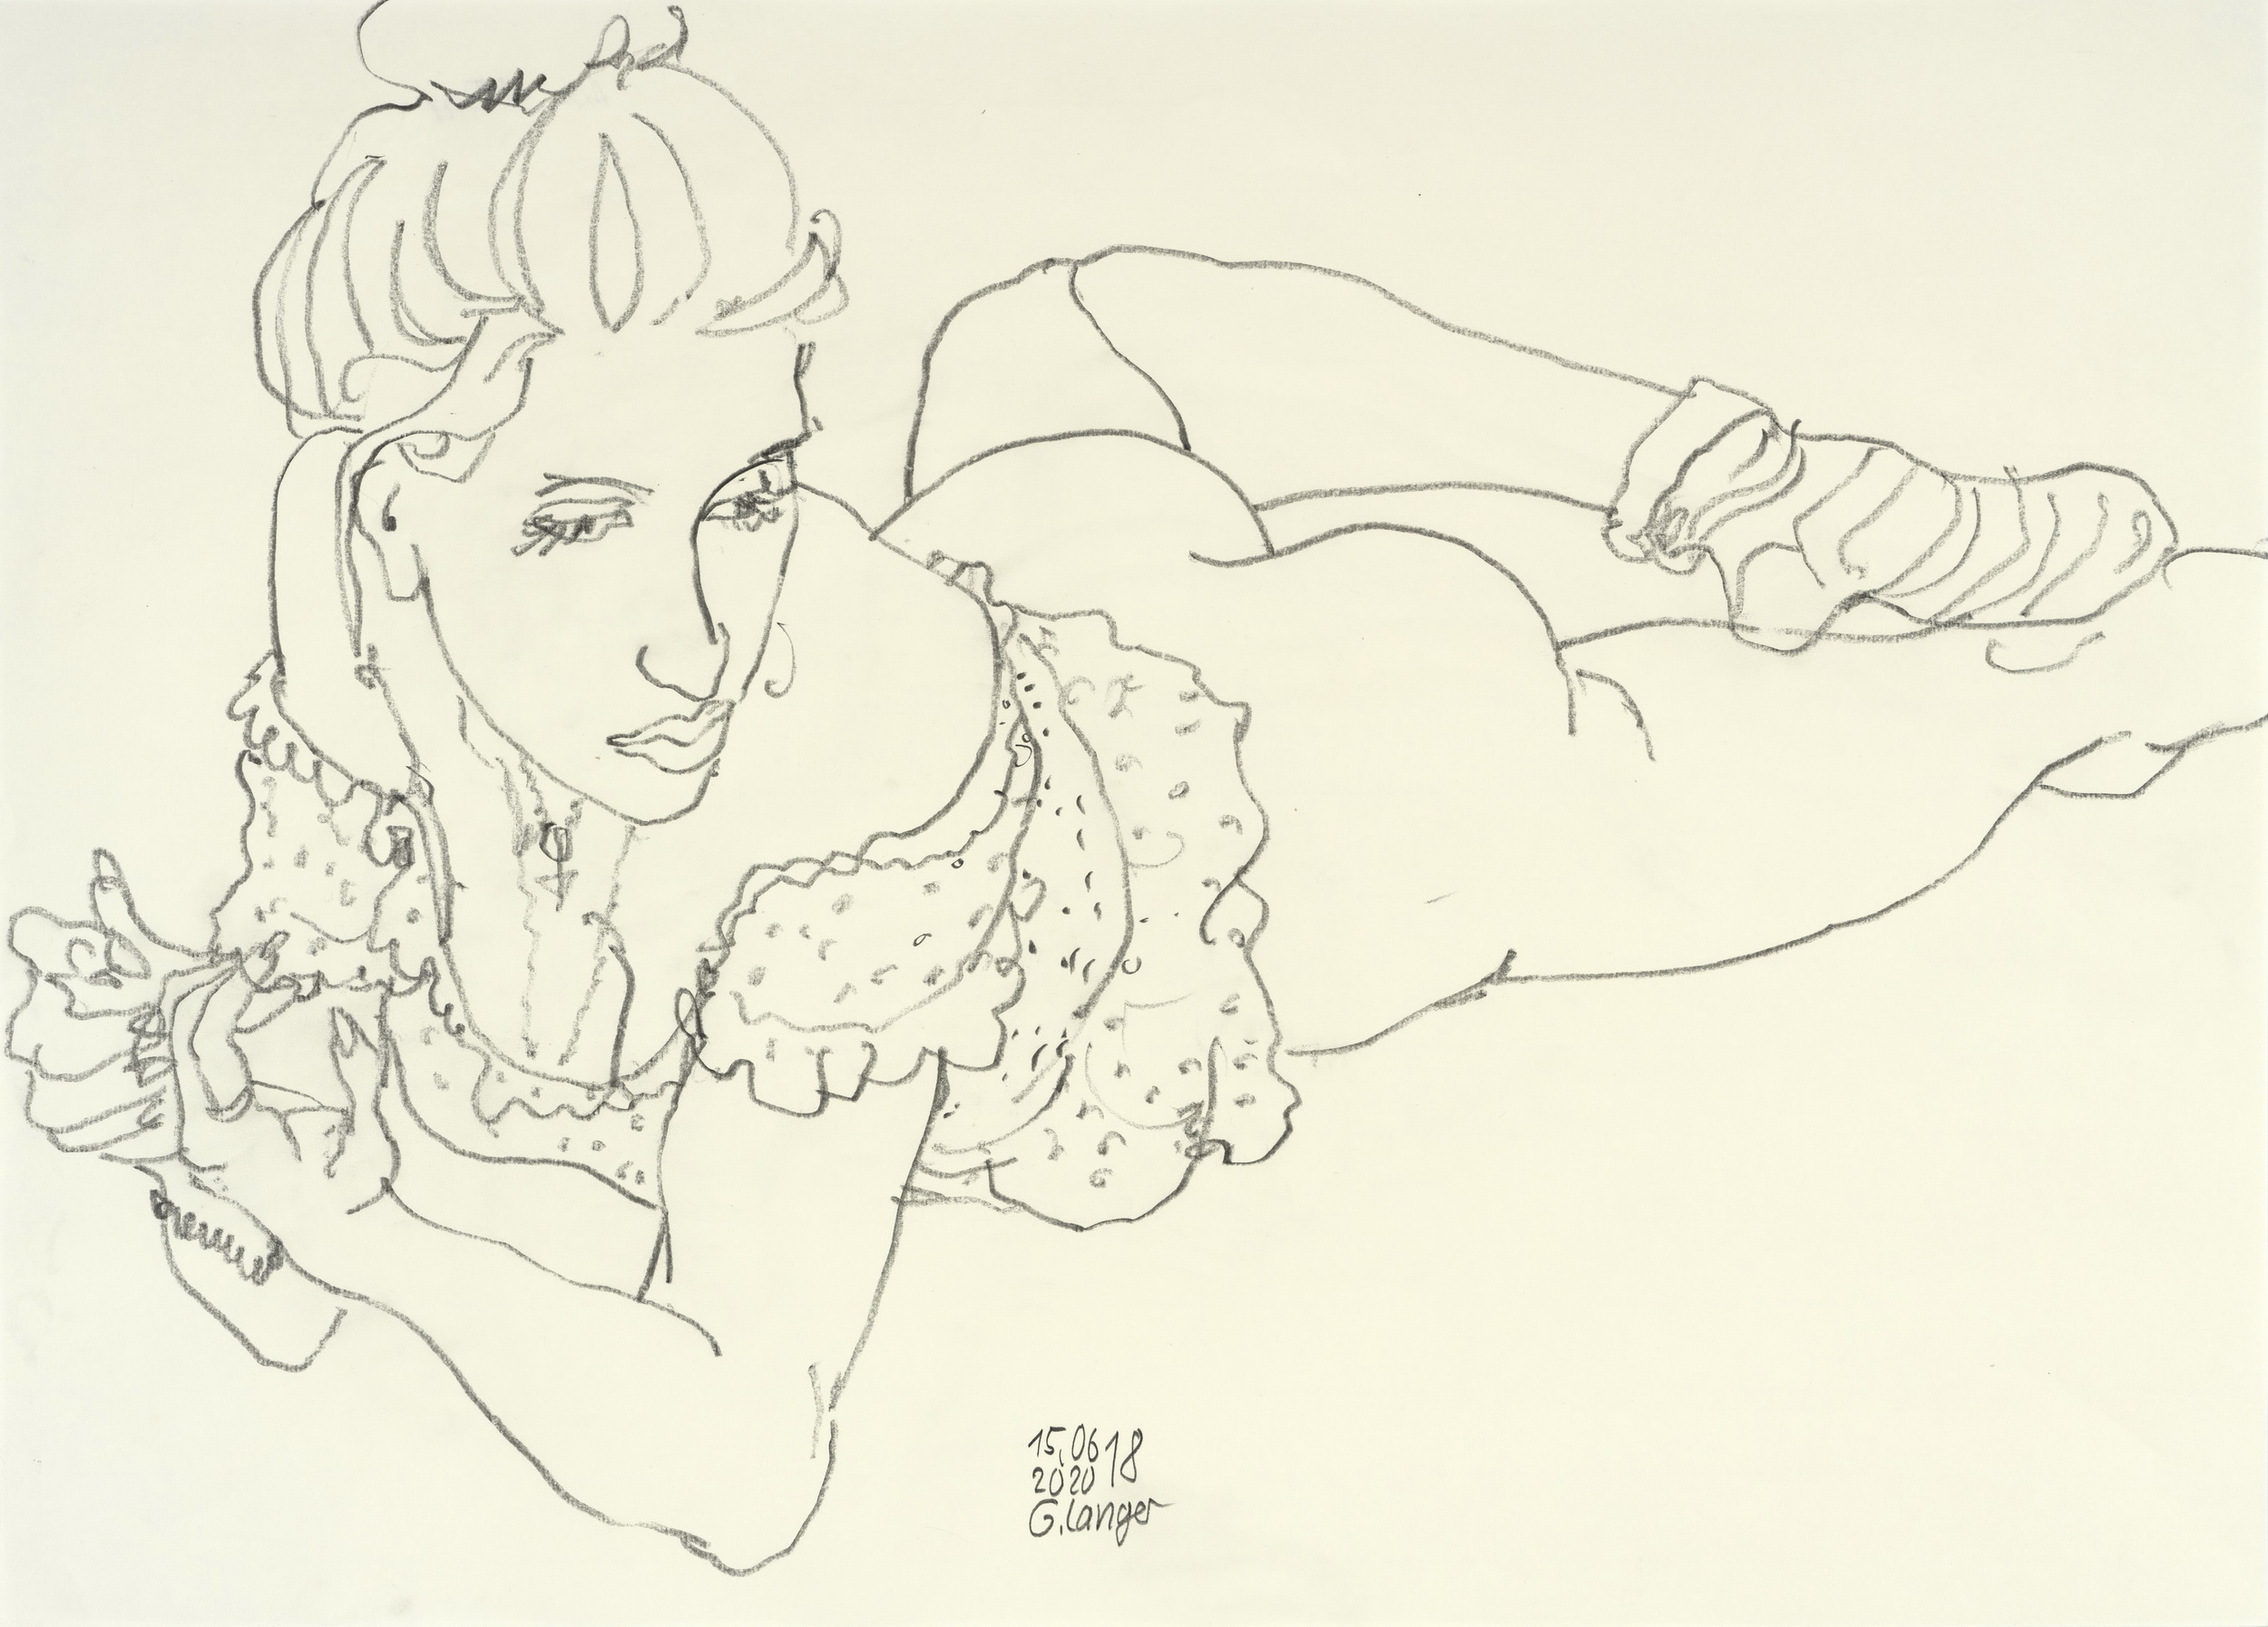 Gunter Langer, Liegendes halb bekleidetes Mädchen, 2020, Zeichnung, Zeichenpapier, 50 x 70 cm